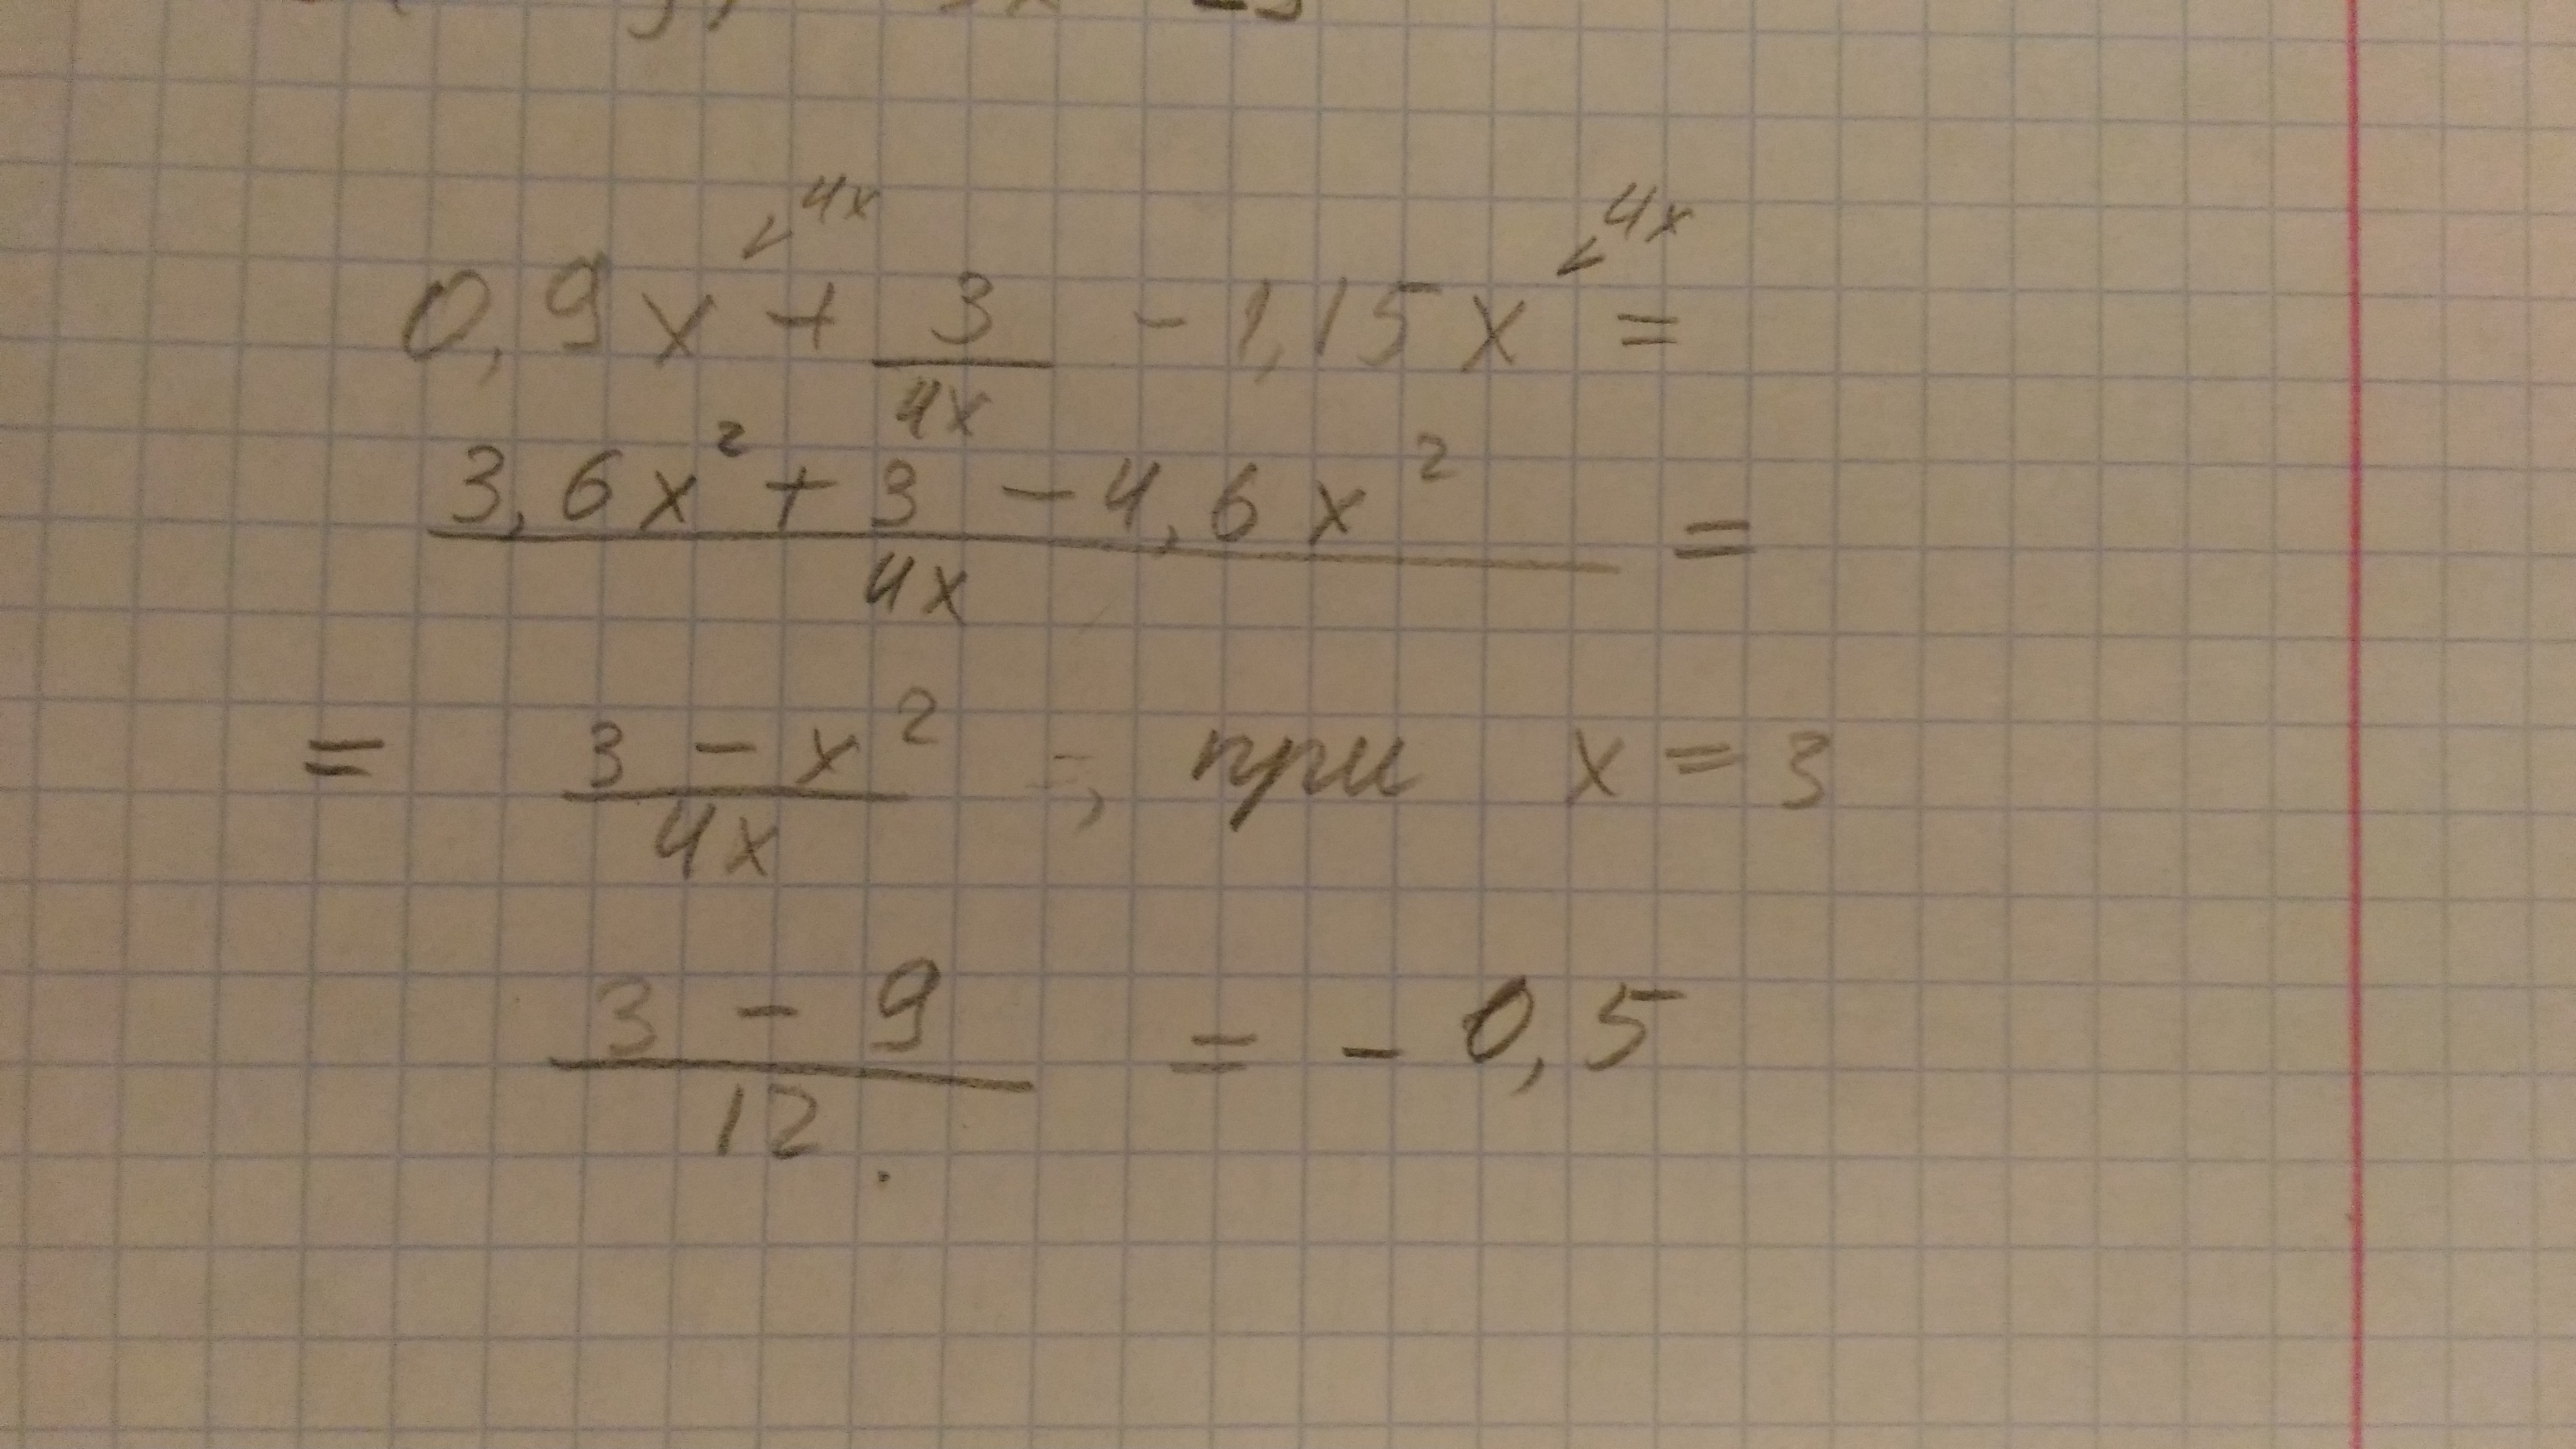 6x 4 3x 3 2x 12 0. |-4|+|1-3x| при x. [3x-3]-4x при x= -2. 4 4 5 X X      при x  3. 3x-|4x+15| при x=-8.